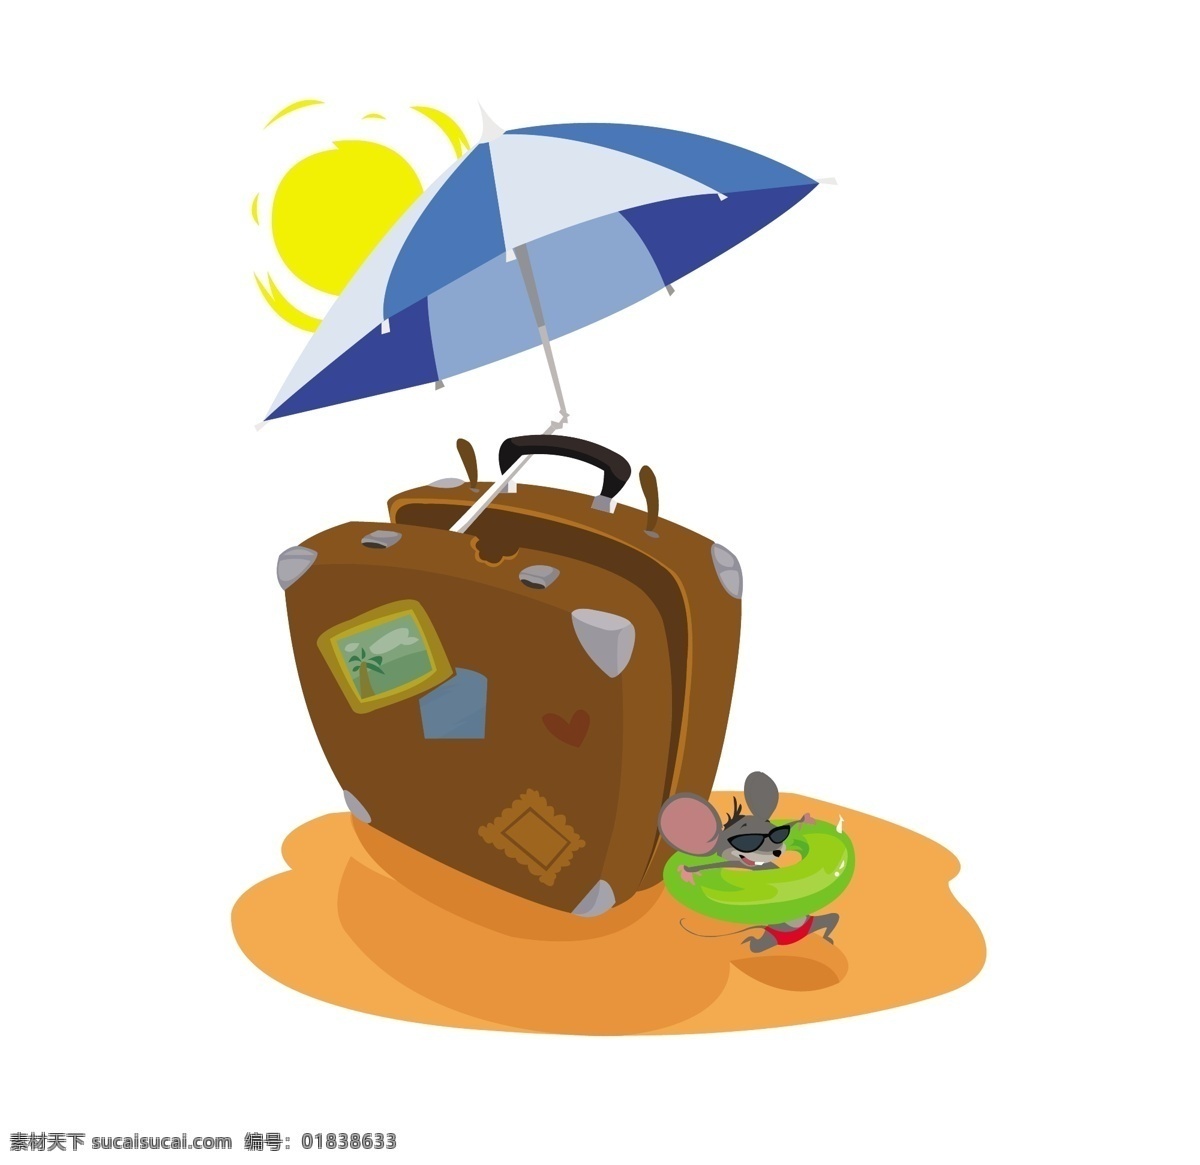 夏日 背景 搞笑 老鼠 夏季 海洋 海滩 阳光 壁纸 可爱 度假 雨伞 鼠标 有趣 手提箱 夏季海滩 季节 花车 季节性